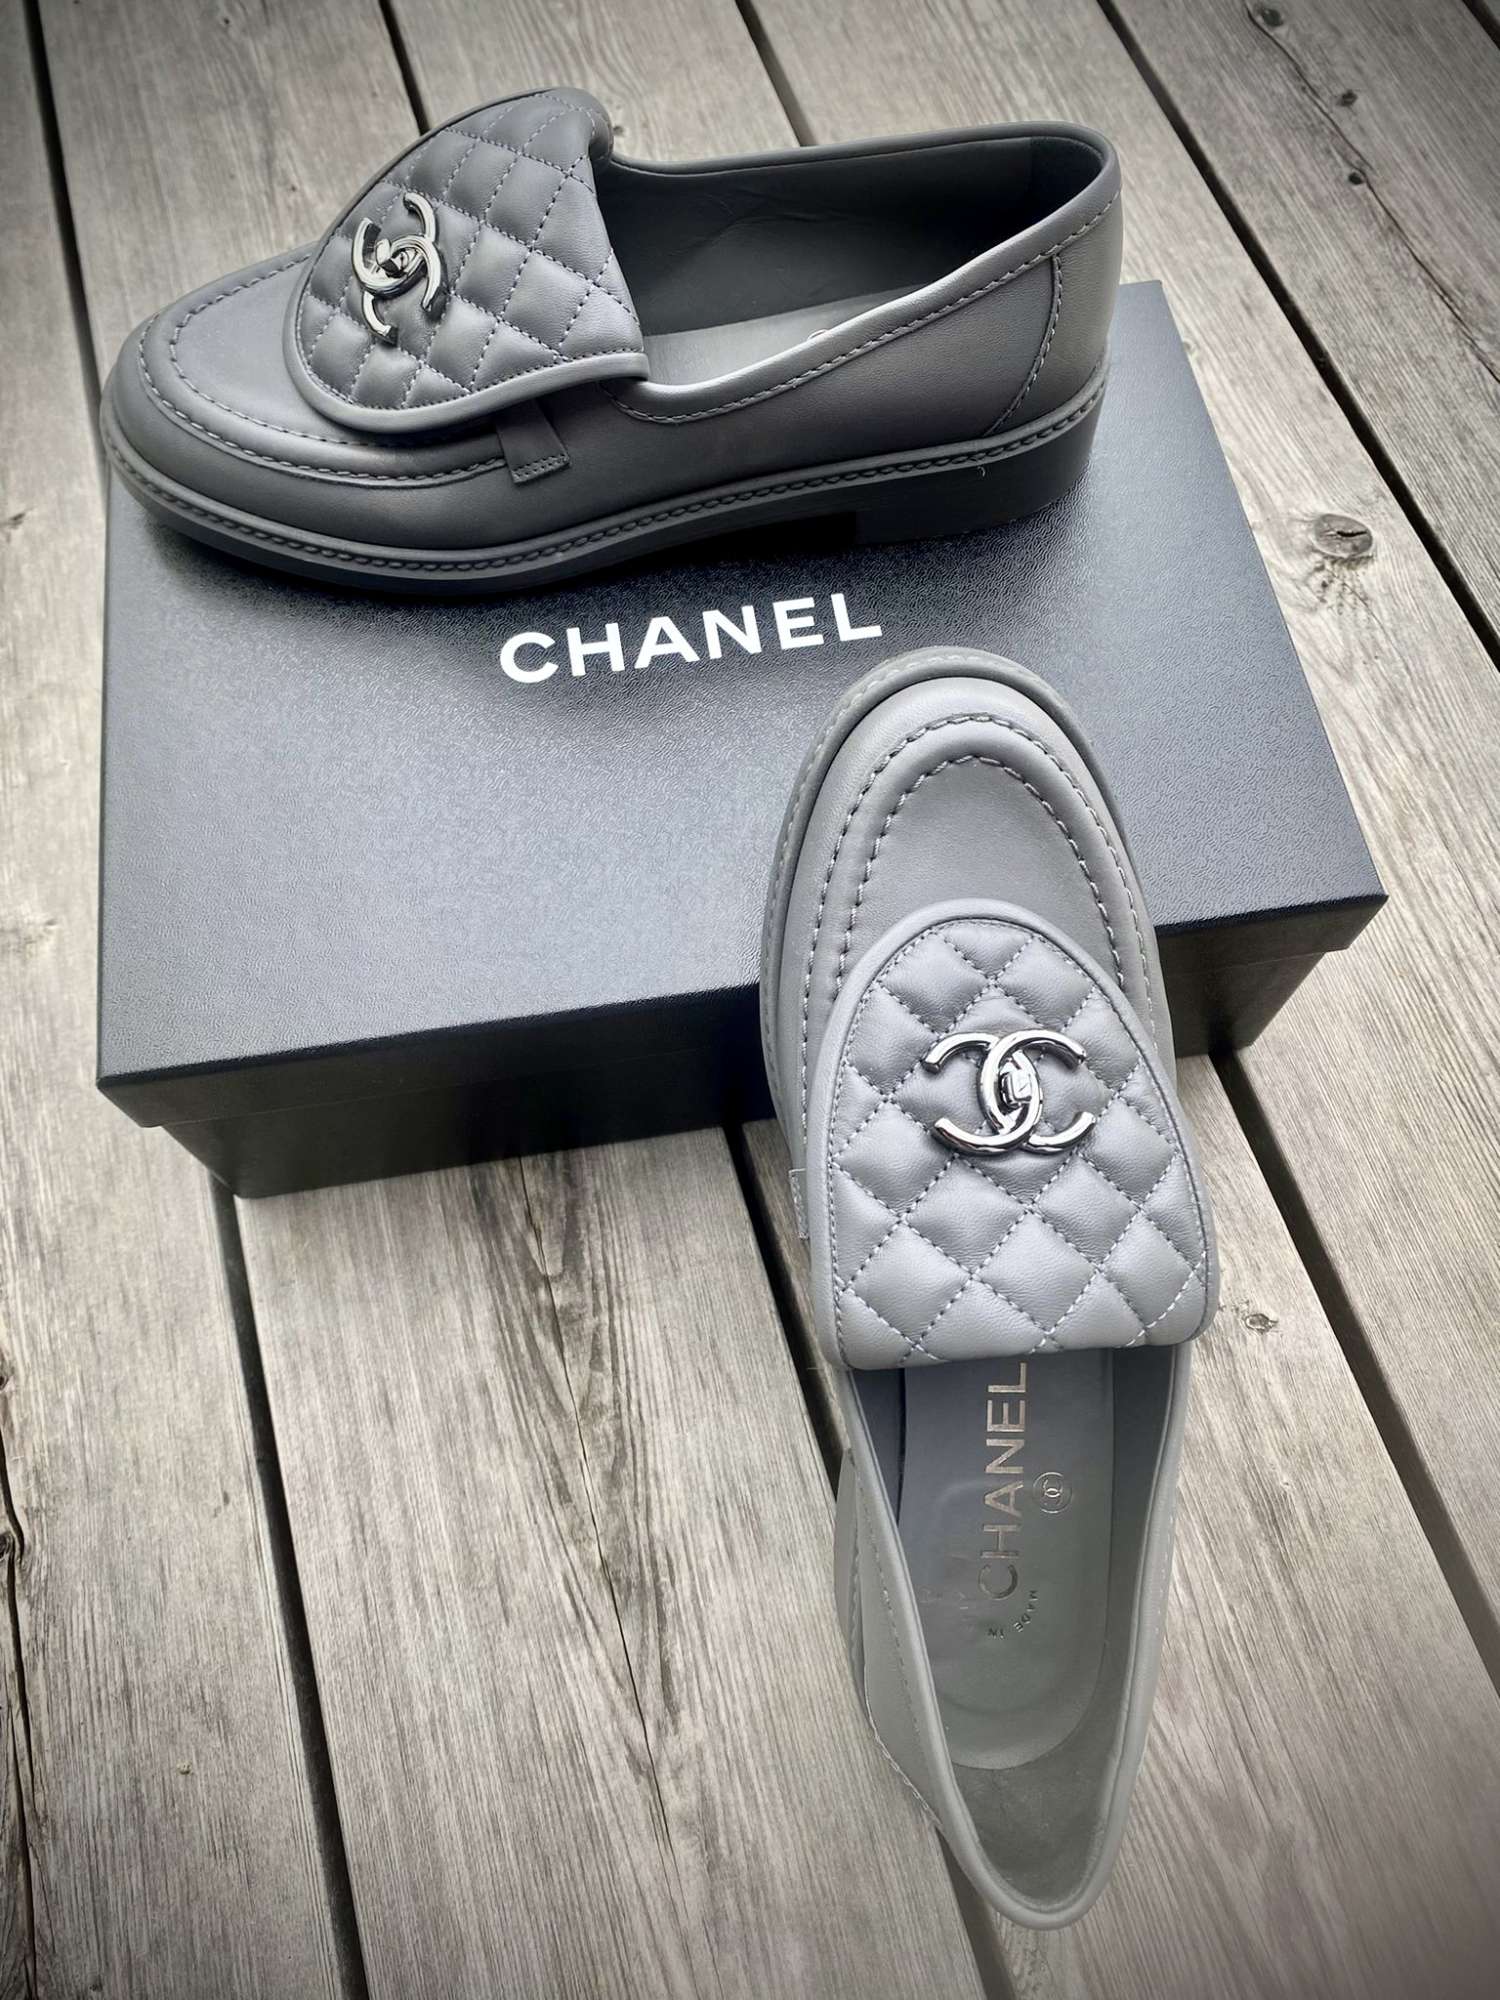 Chanel loafer